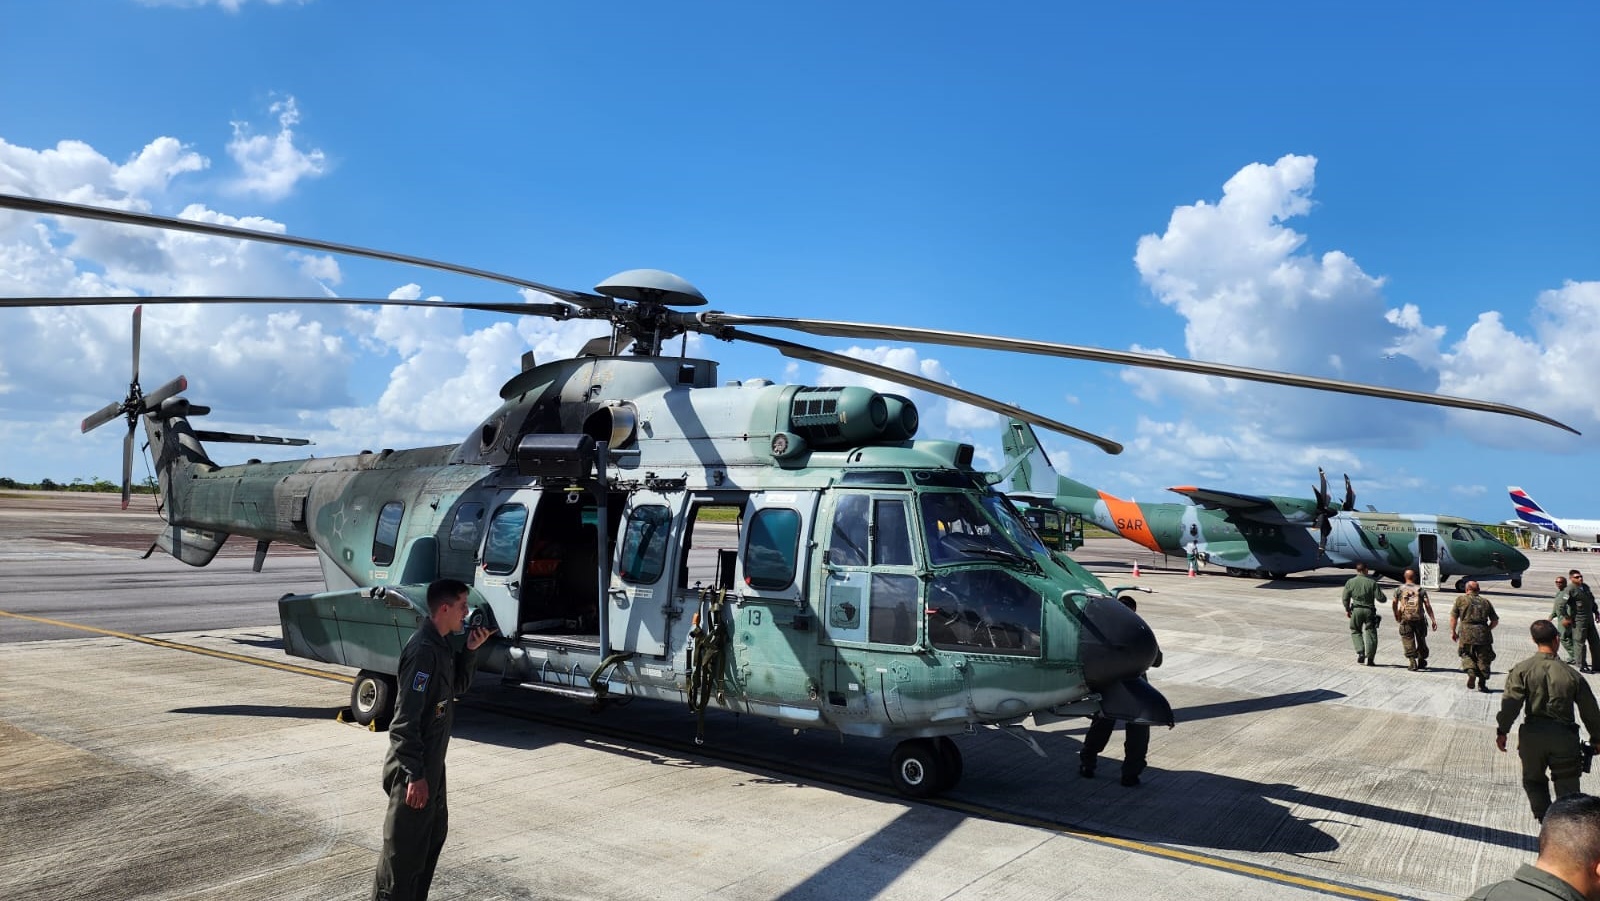 Tripulantes de helicóptero desaparecido foram resgatados pela FAB